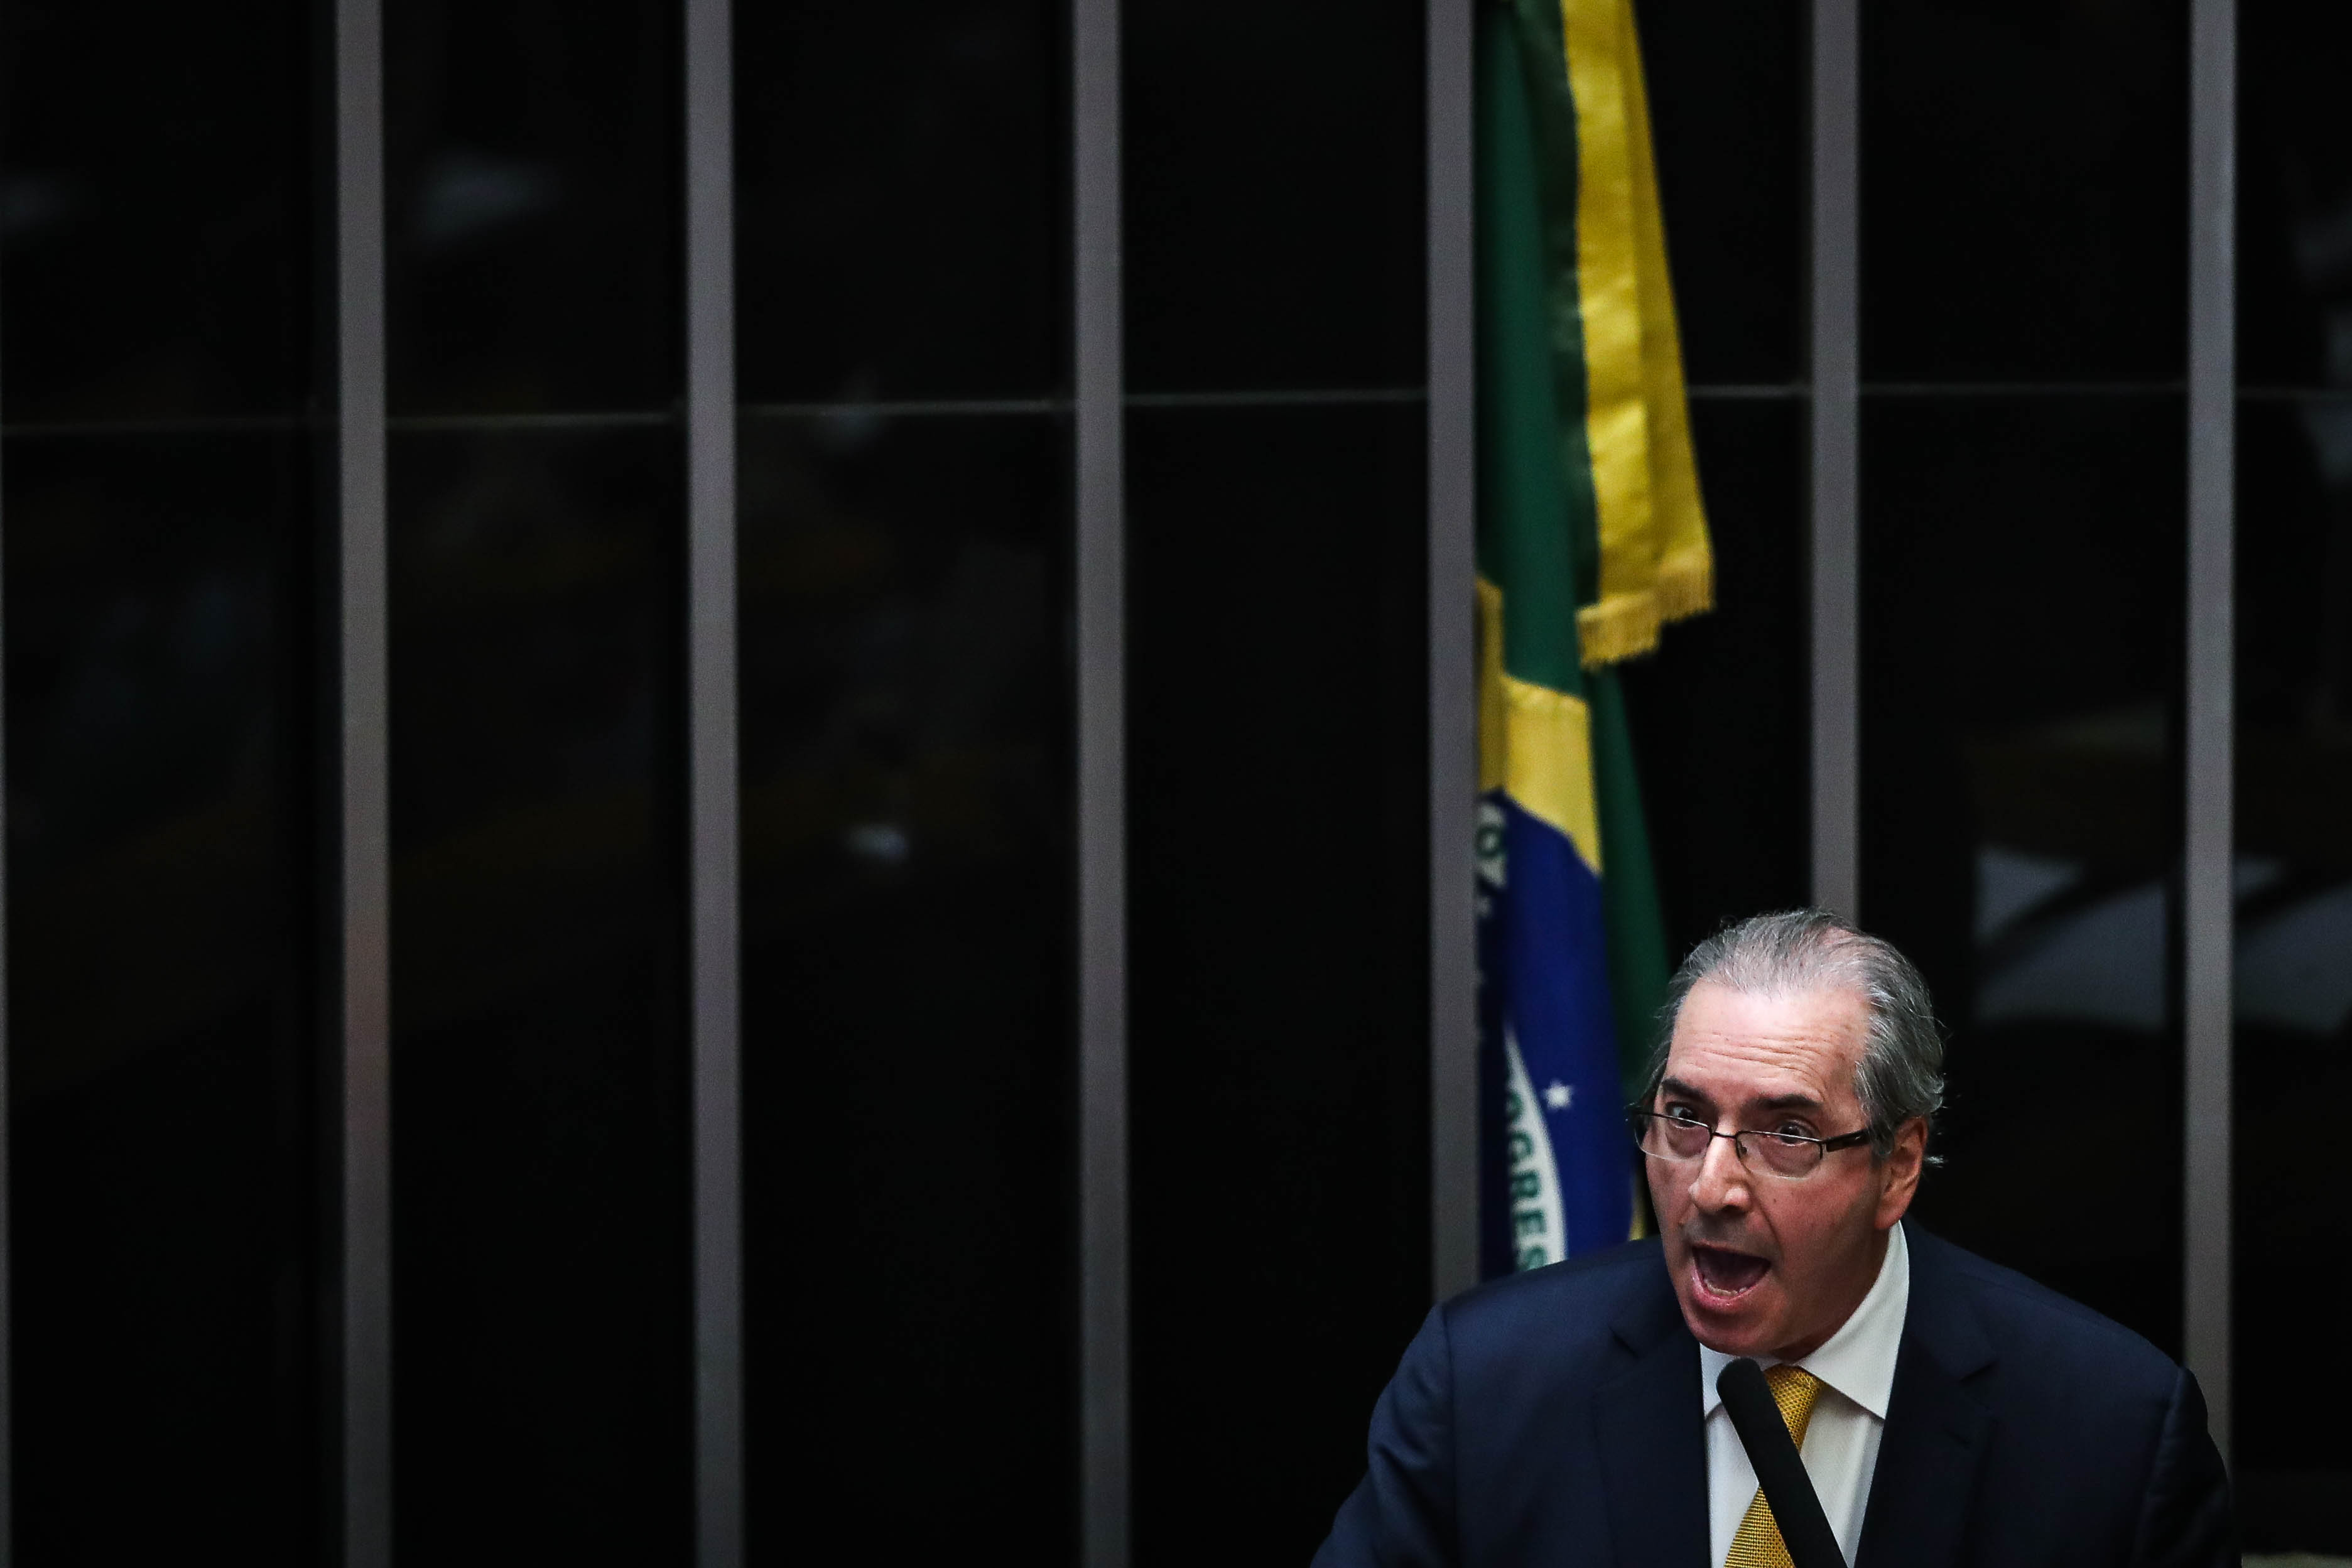 Corrupción activa, pasiva, prevaricación, blanqueo de dinero son algunos de los graves delitos cometidos por Cunha.